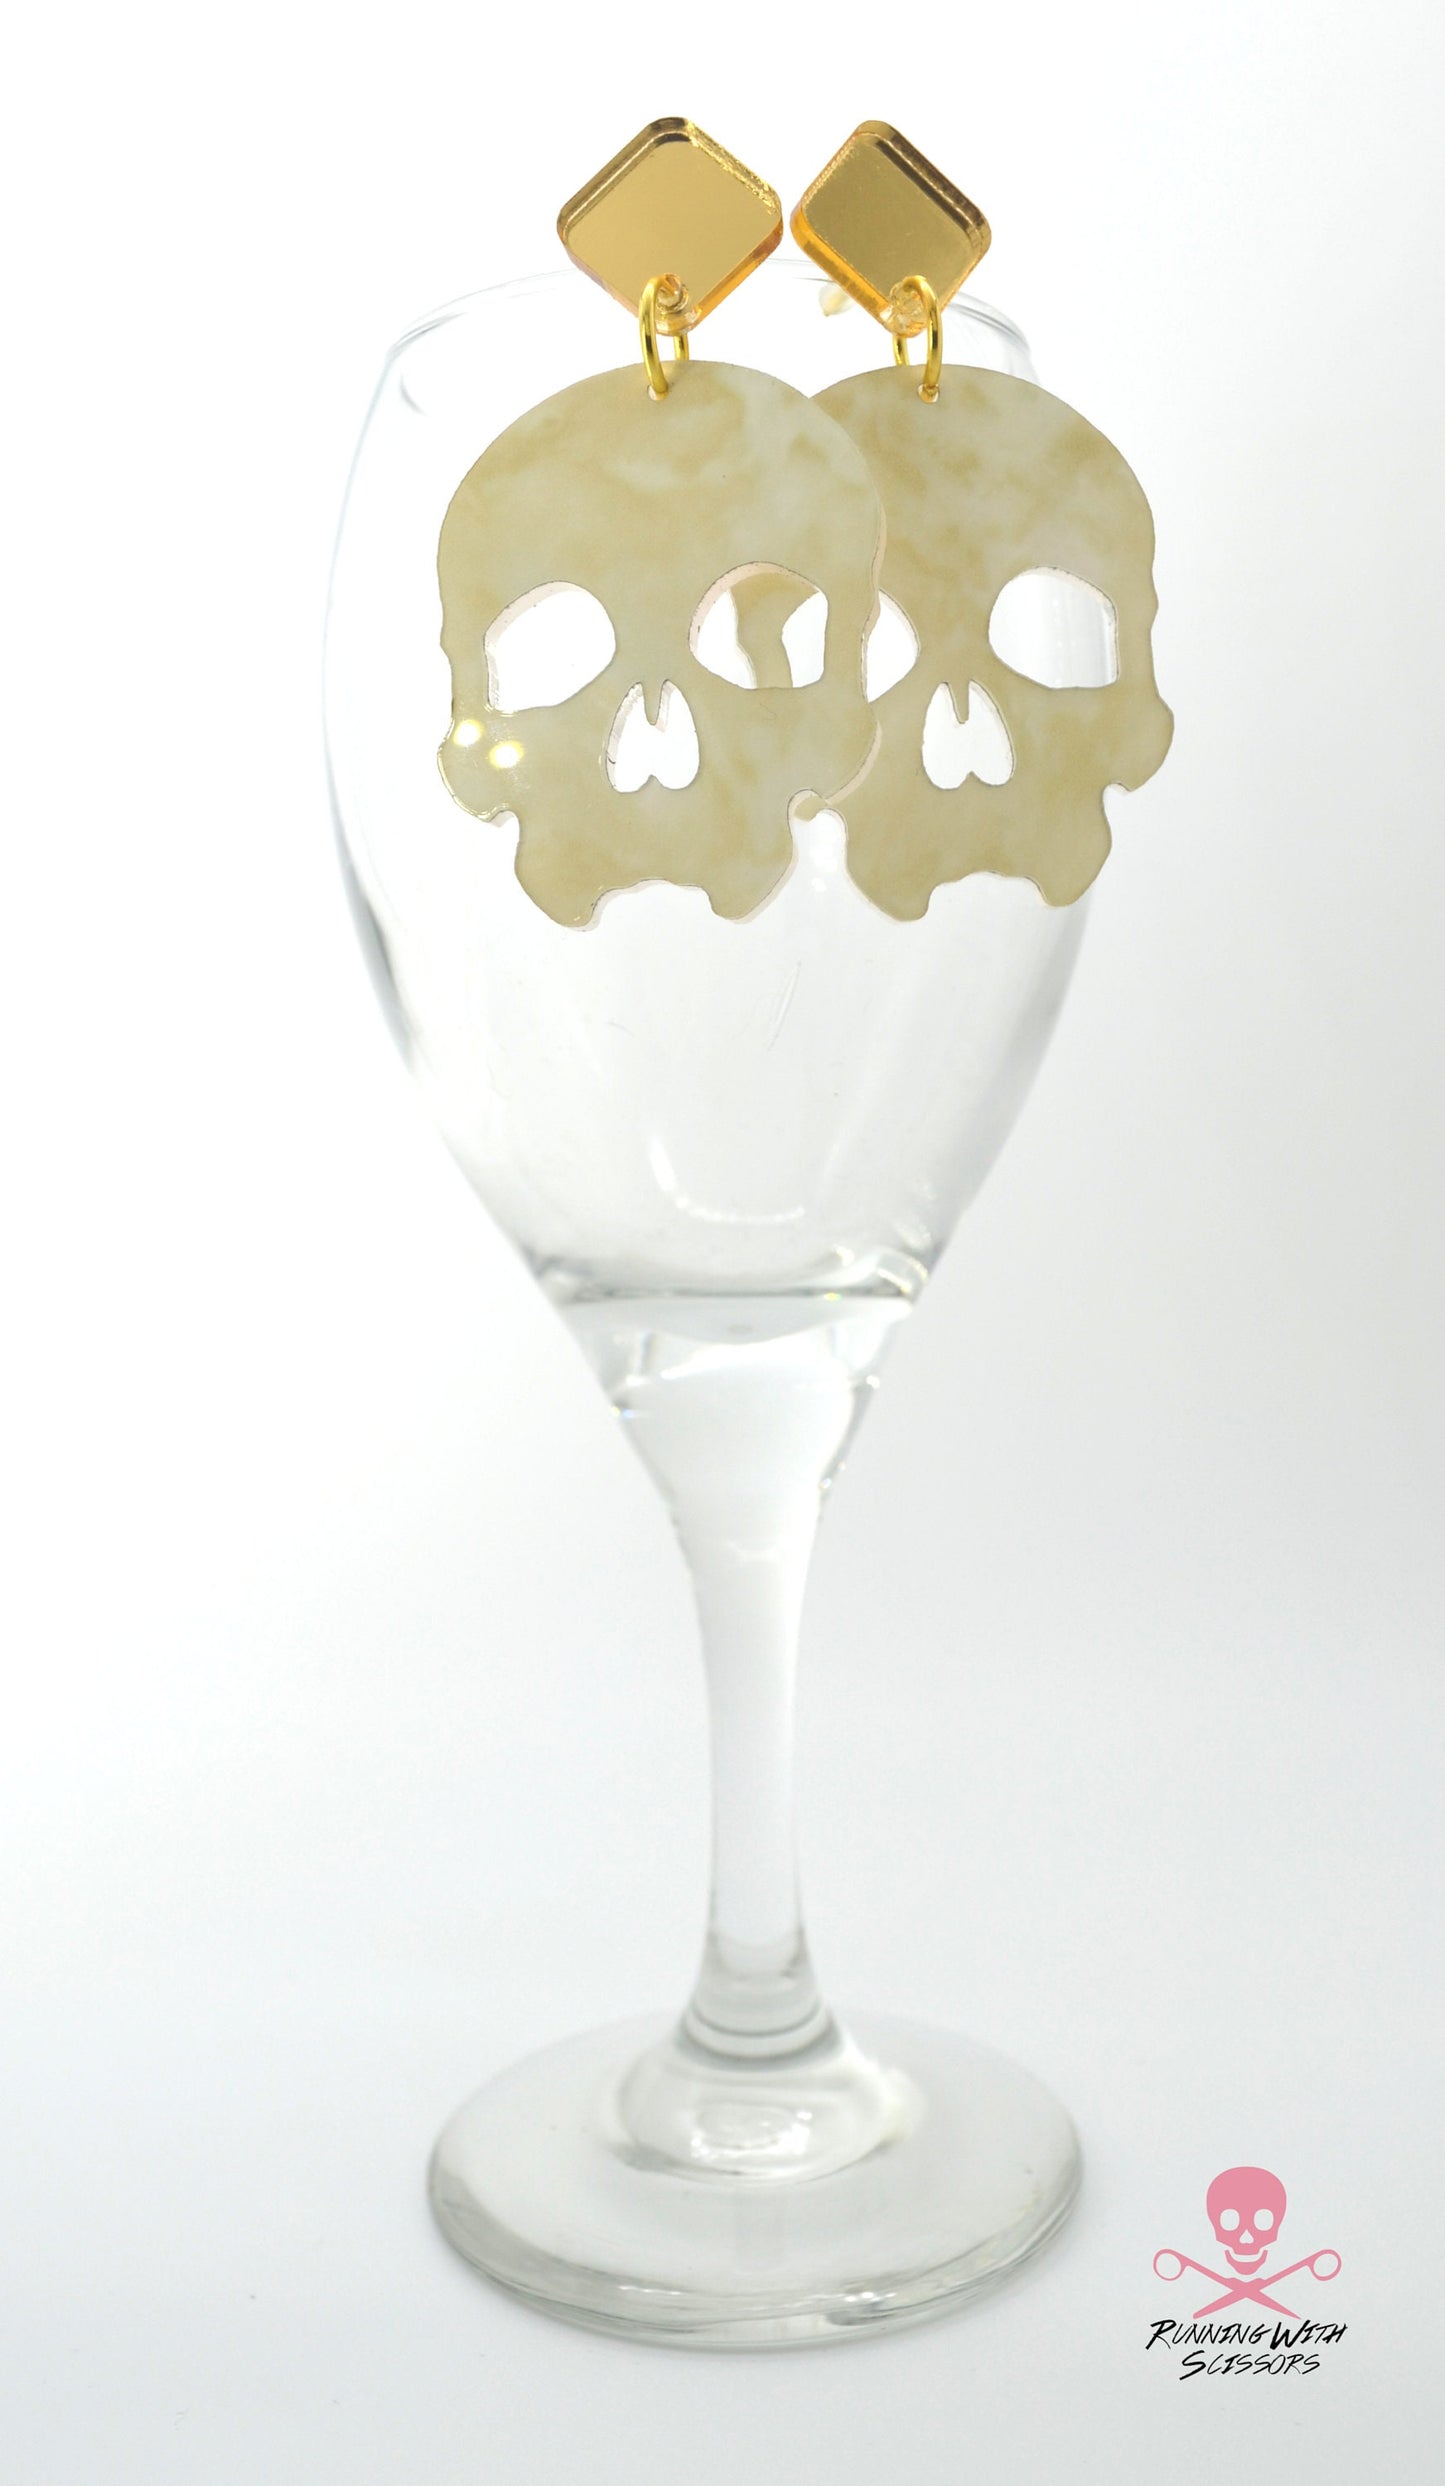 SALE Skull Dangles in Ivory Marble - Laser Cut Acrylic Post Drop Earrings